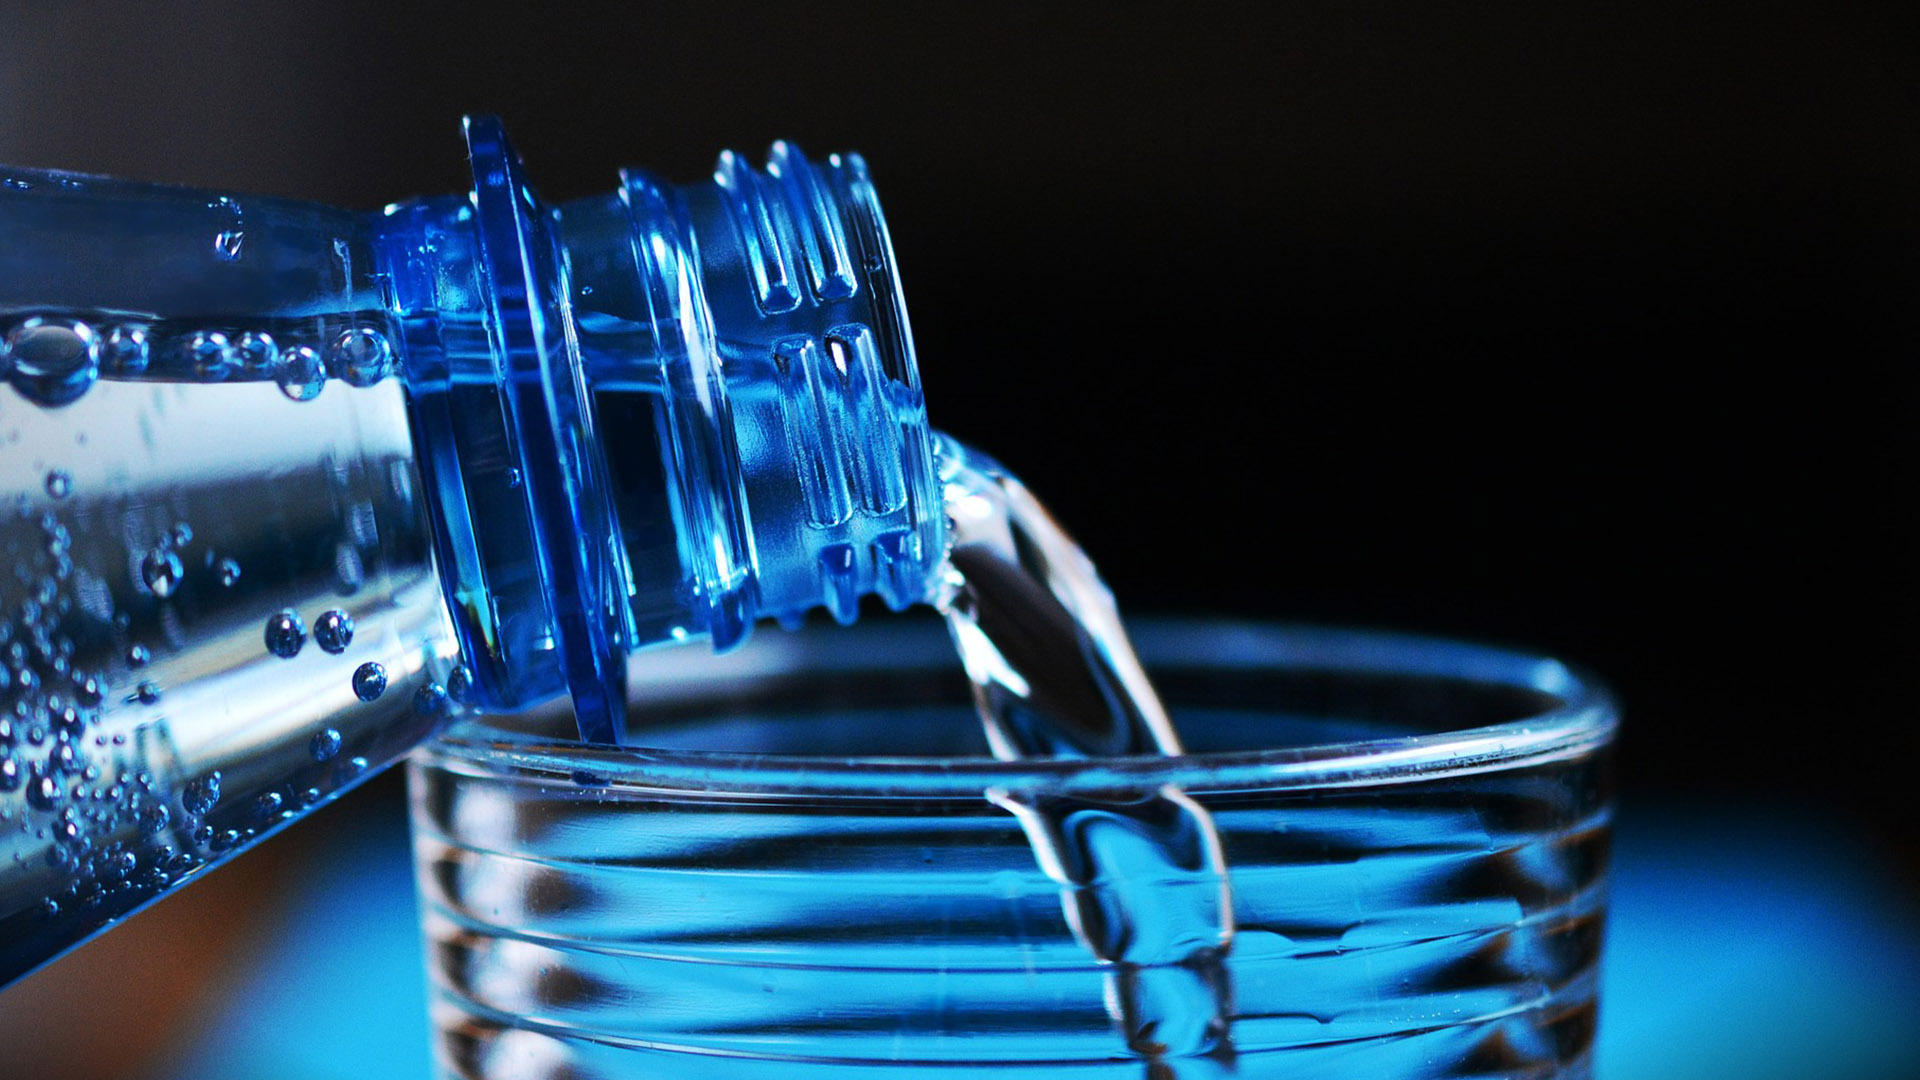 Para ter a garantia de consumir uma água potável, dê preferência sempre a águas servidas em garrafas fechadas.